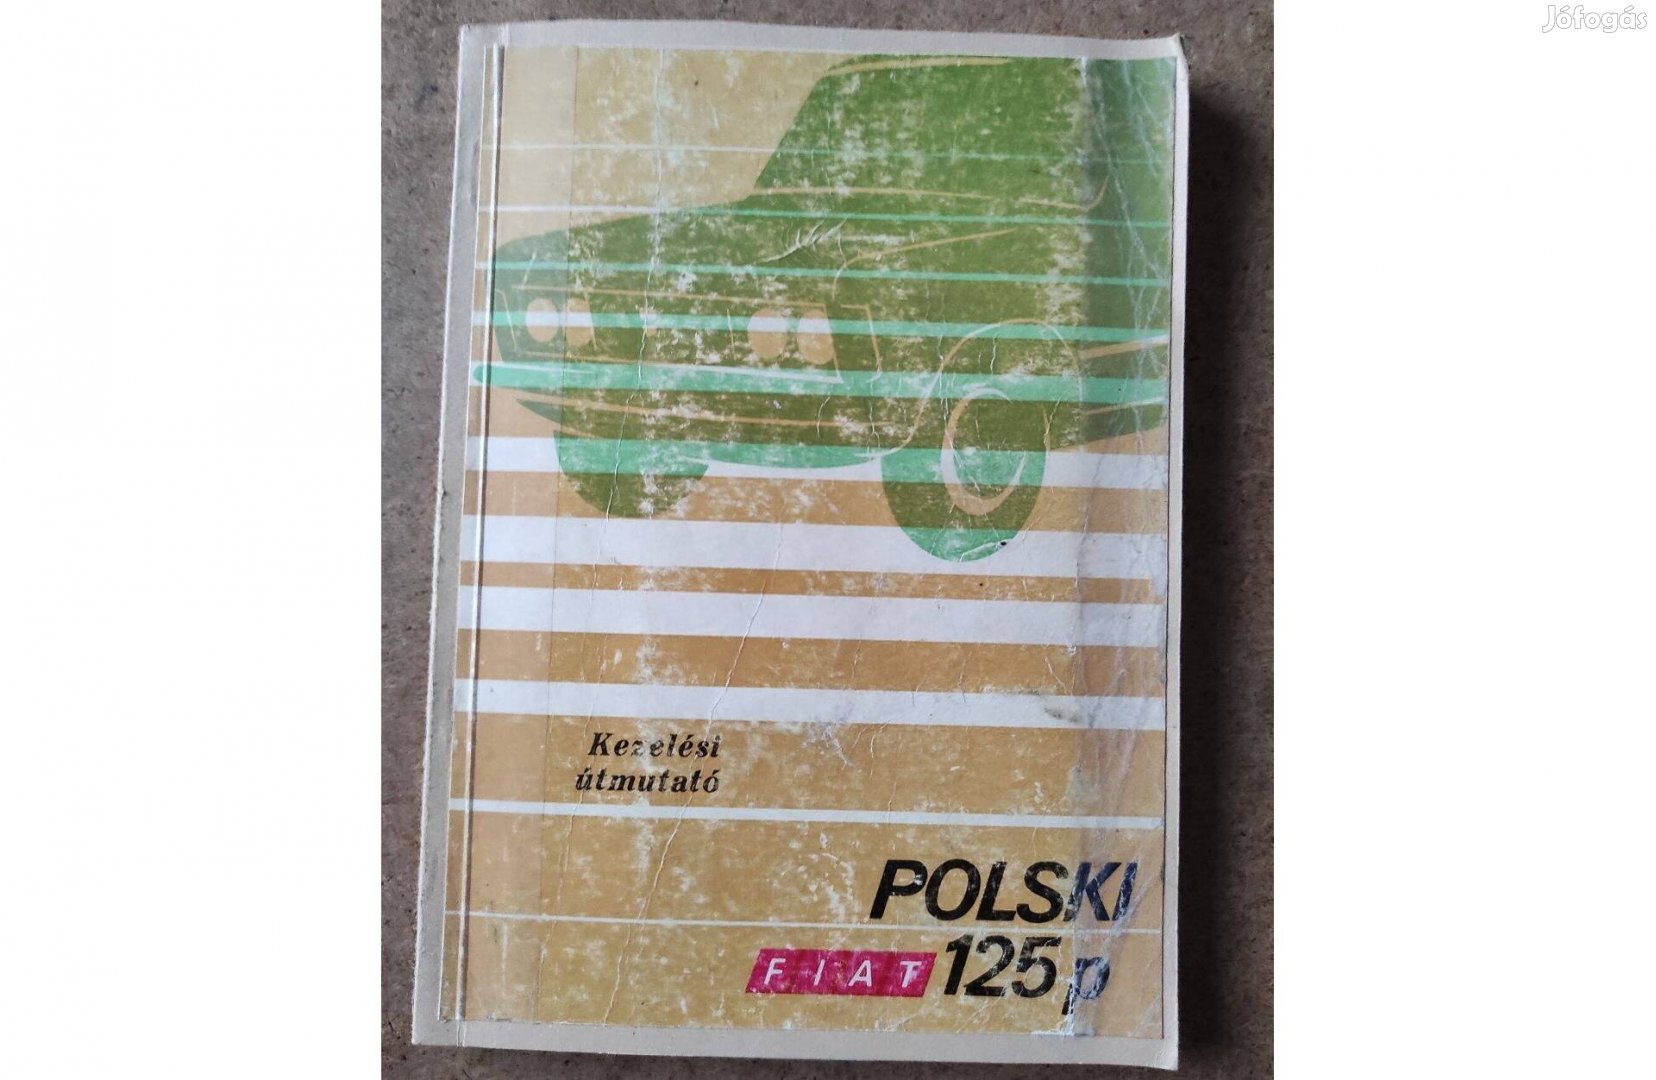 Polski Fiat125p kezelési üzemeltetési utasítás